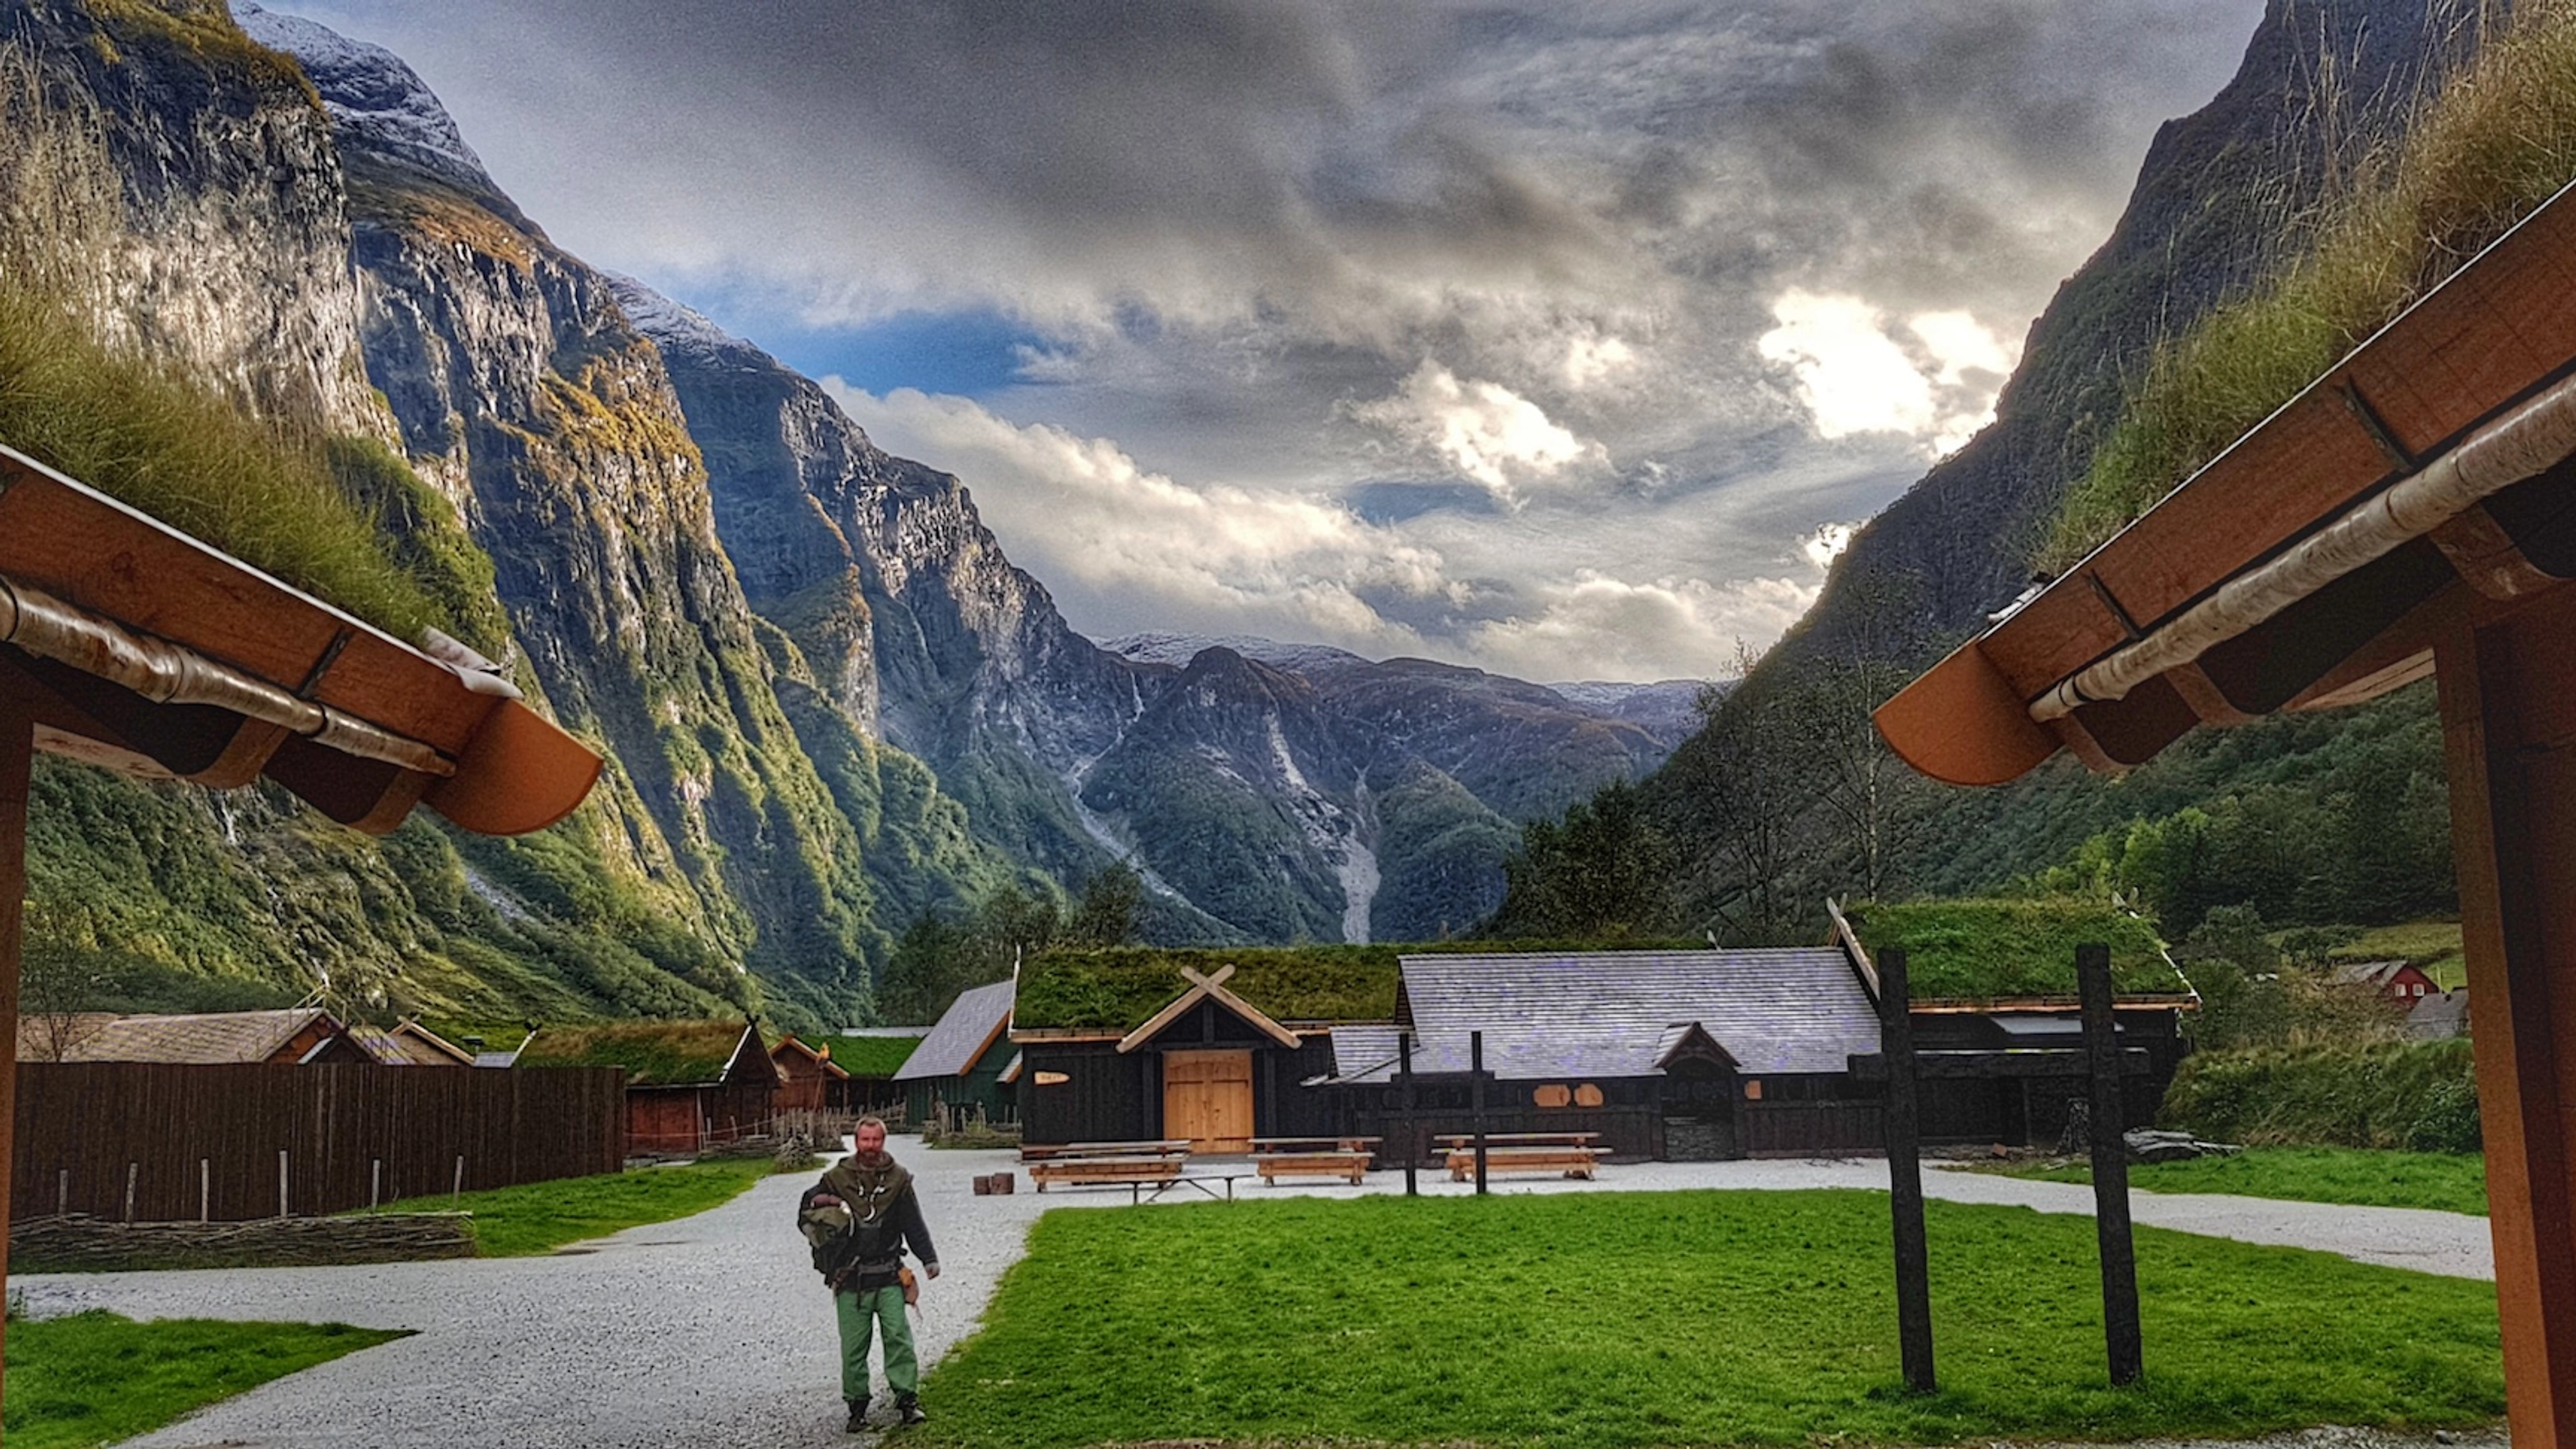 The Viking Village - Gudvangen. Norway